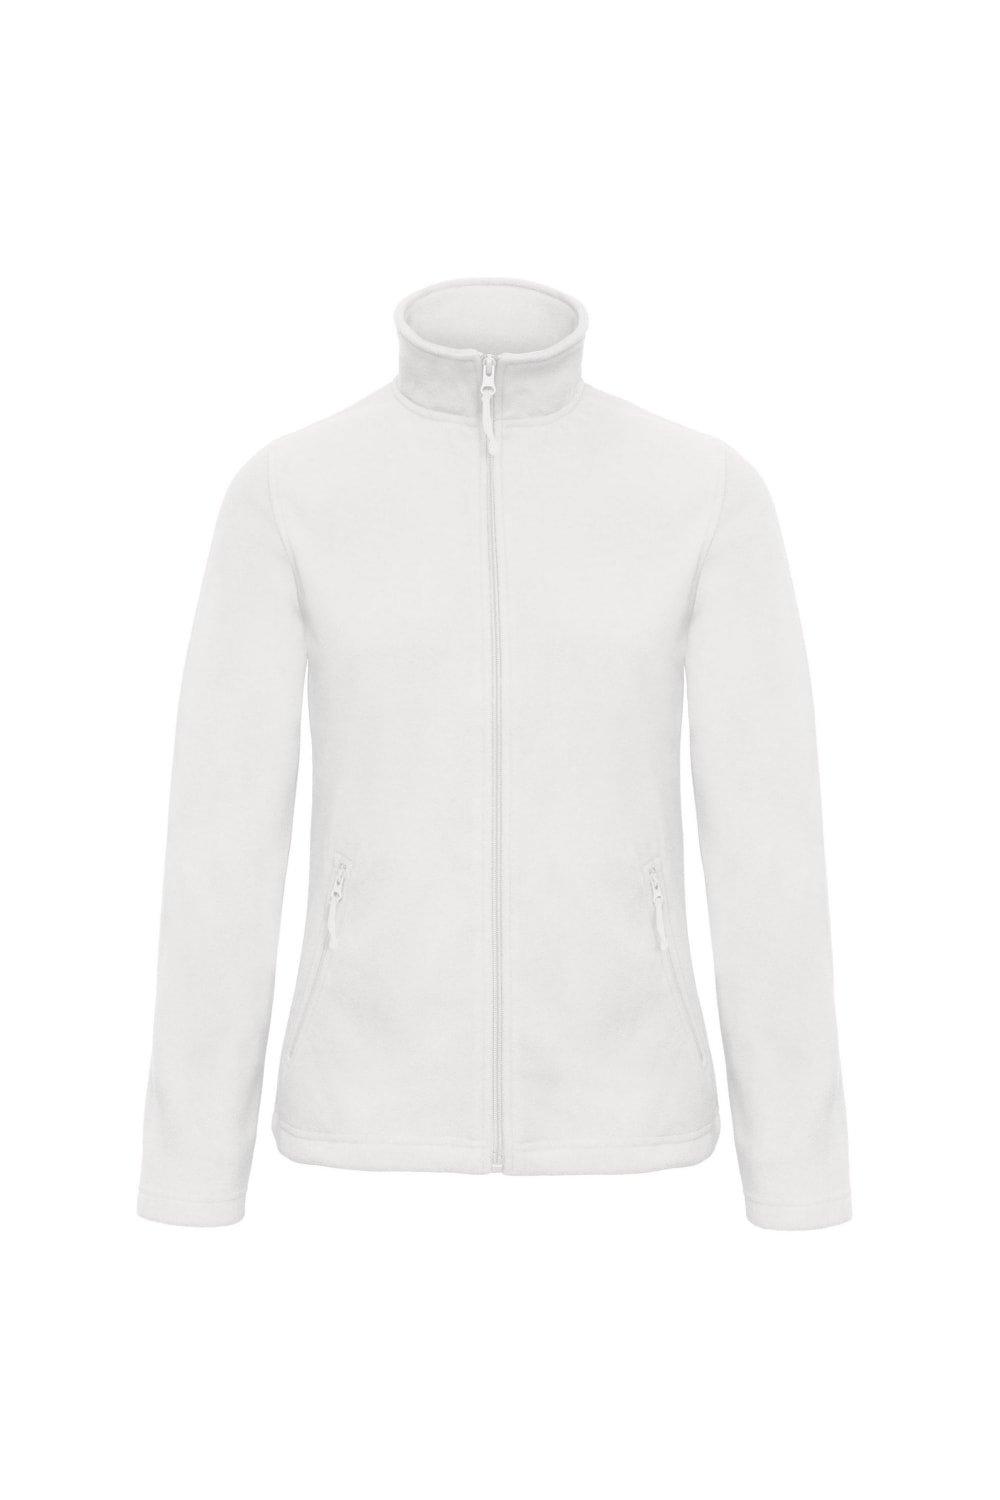 ID.501 Флисовая куртка B&C, белый